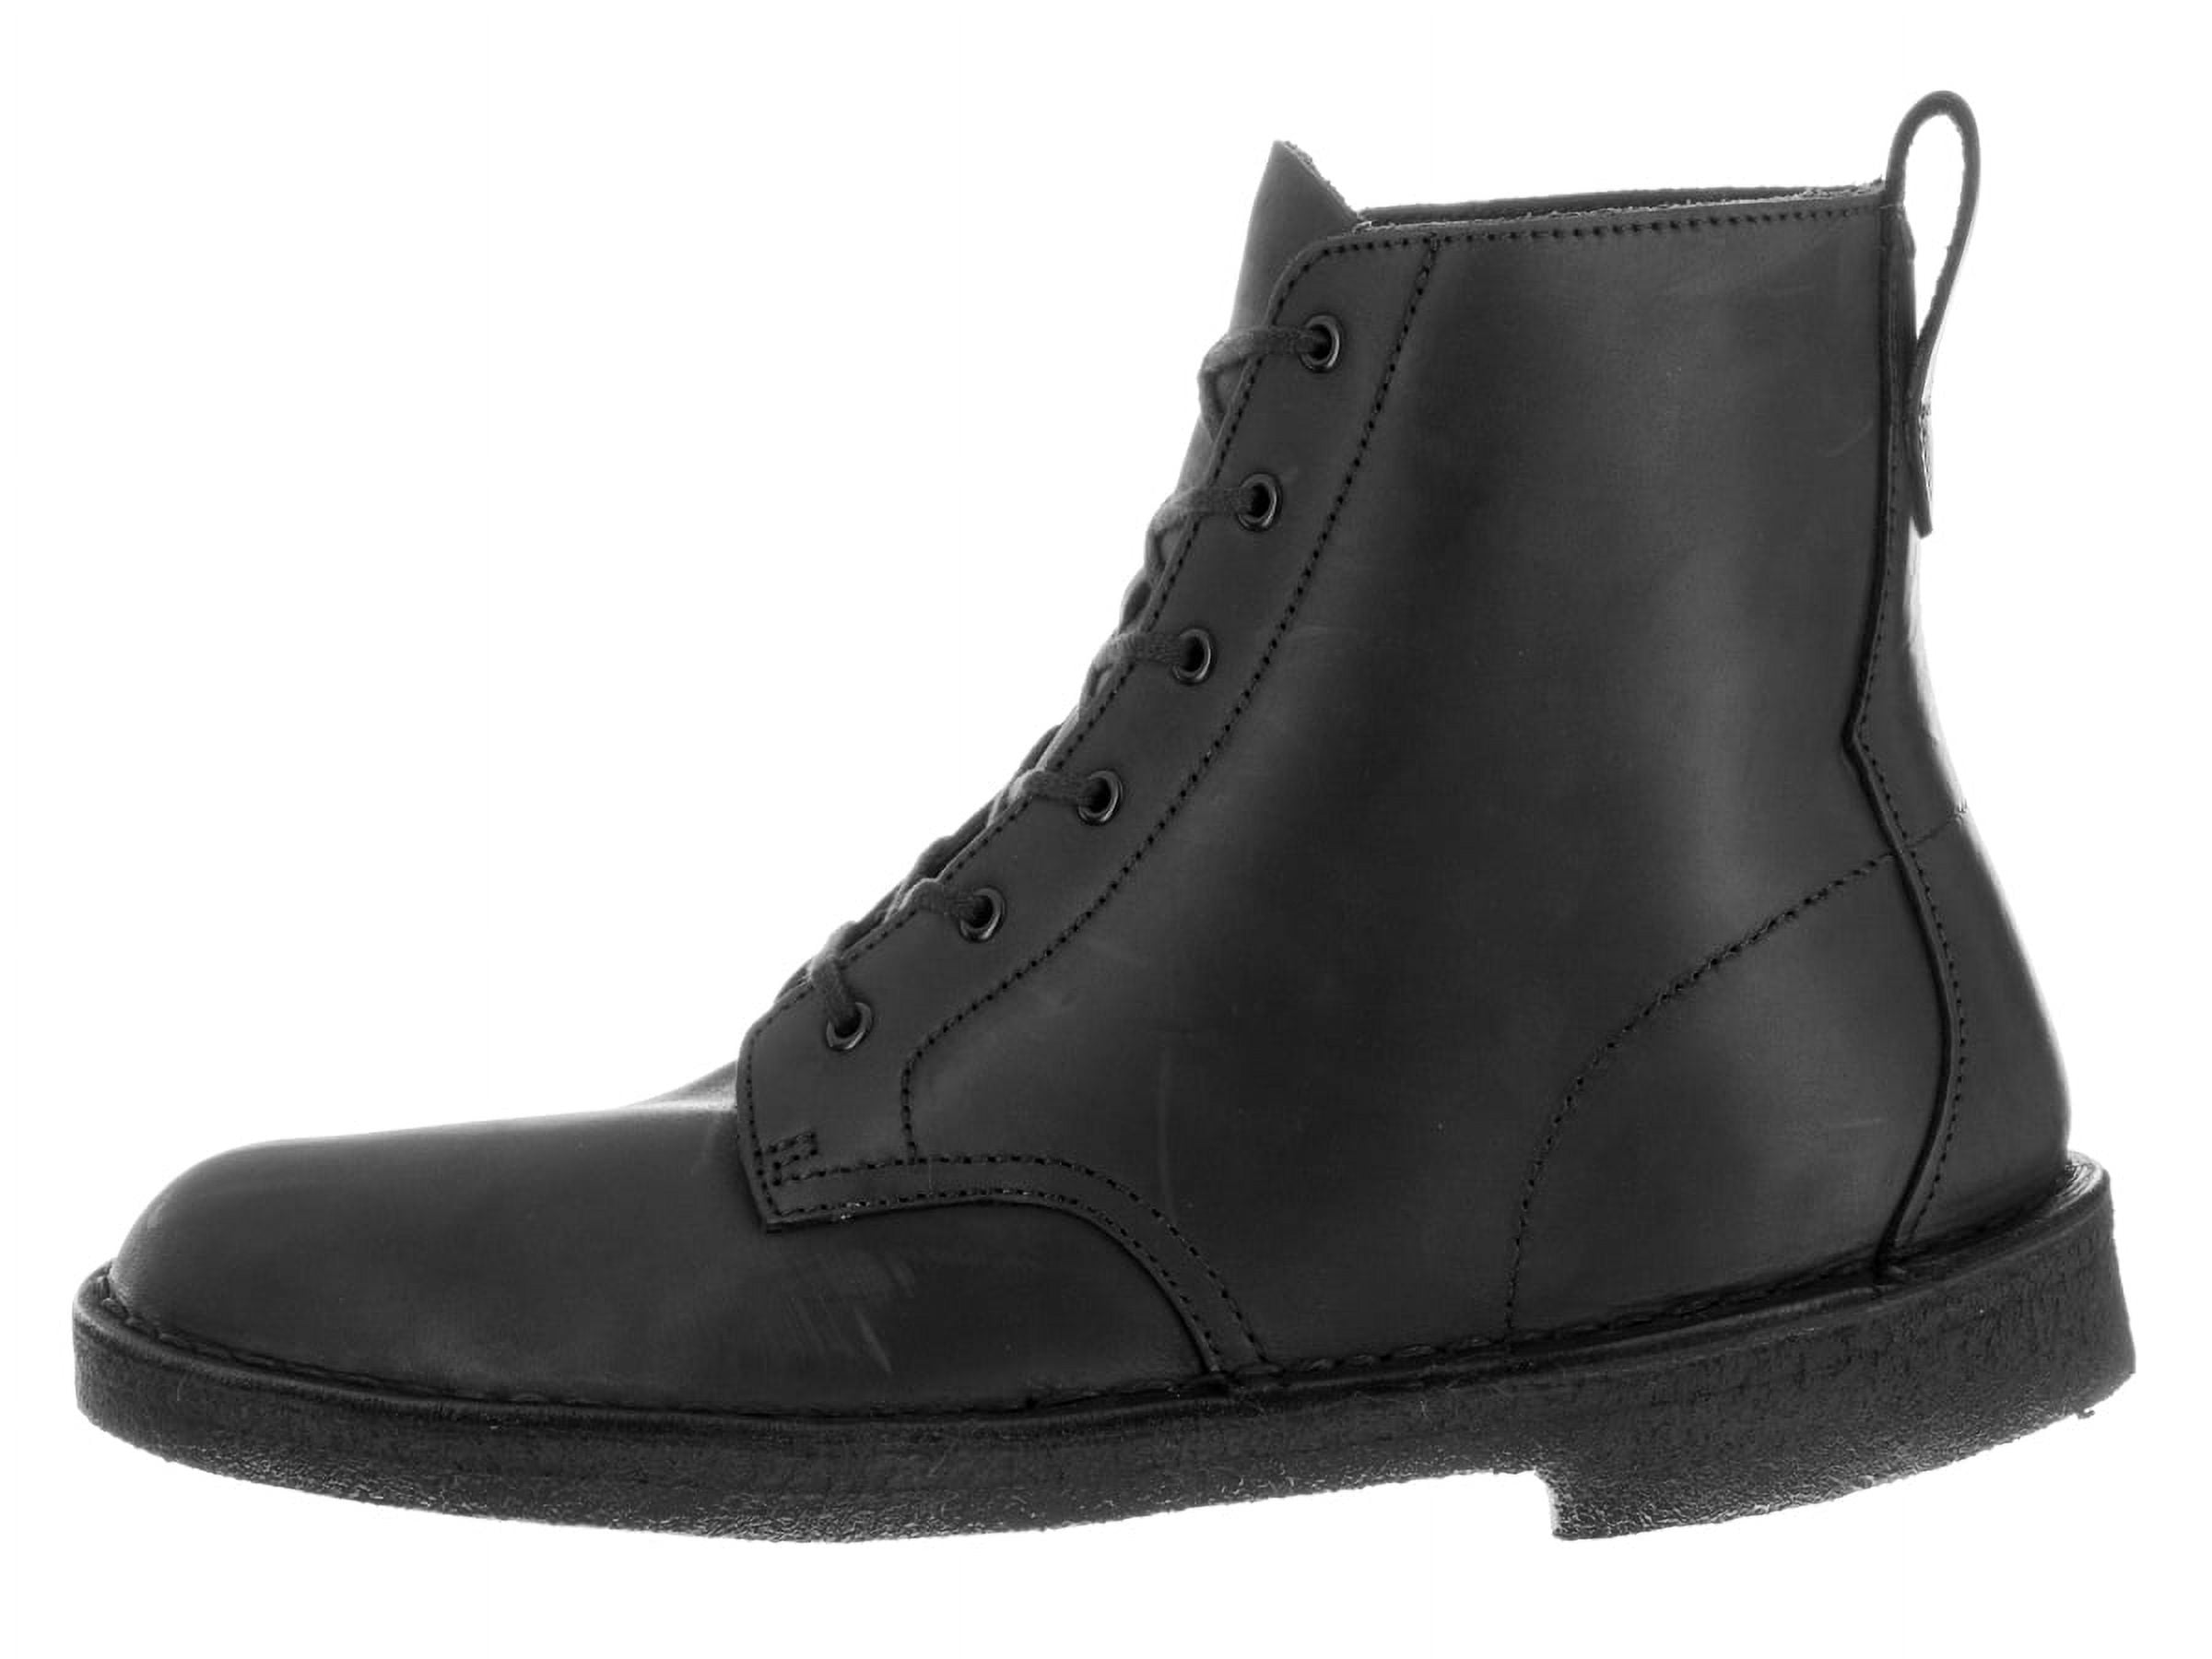 Åbent en gang håndbevægelse Clarks 26119975: Originals Desert Mali Men's Boots Black Beeswax Leather  Shoes (11.5 D(M) US) - Walmart.com